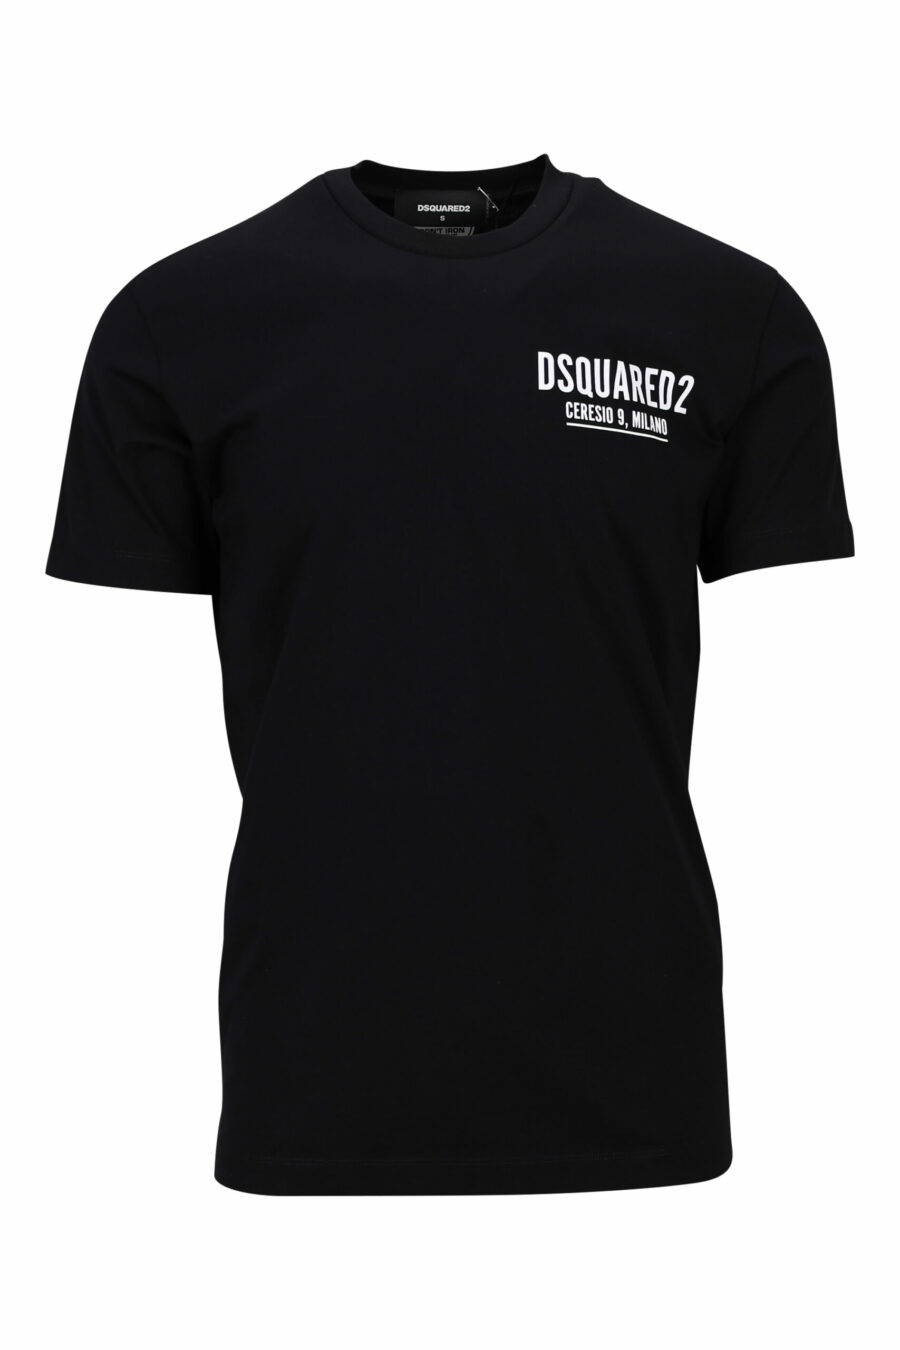 Schwarzes T-shirt mit Minilogo "ceresio 9, milano" - 8054148505264 skaliert